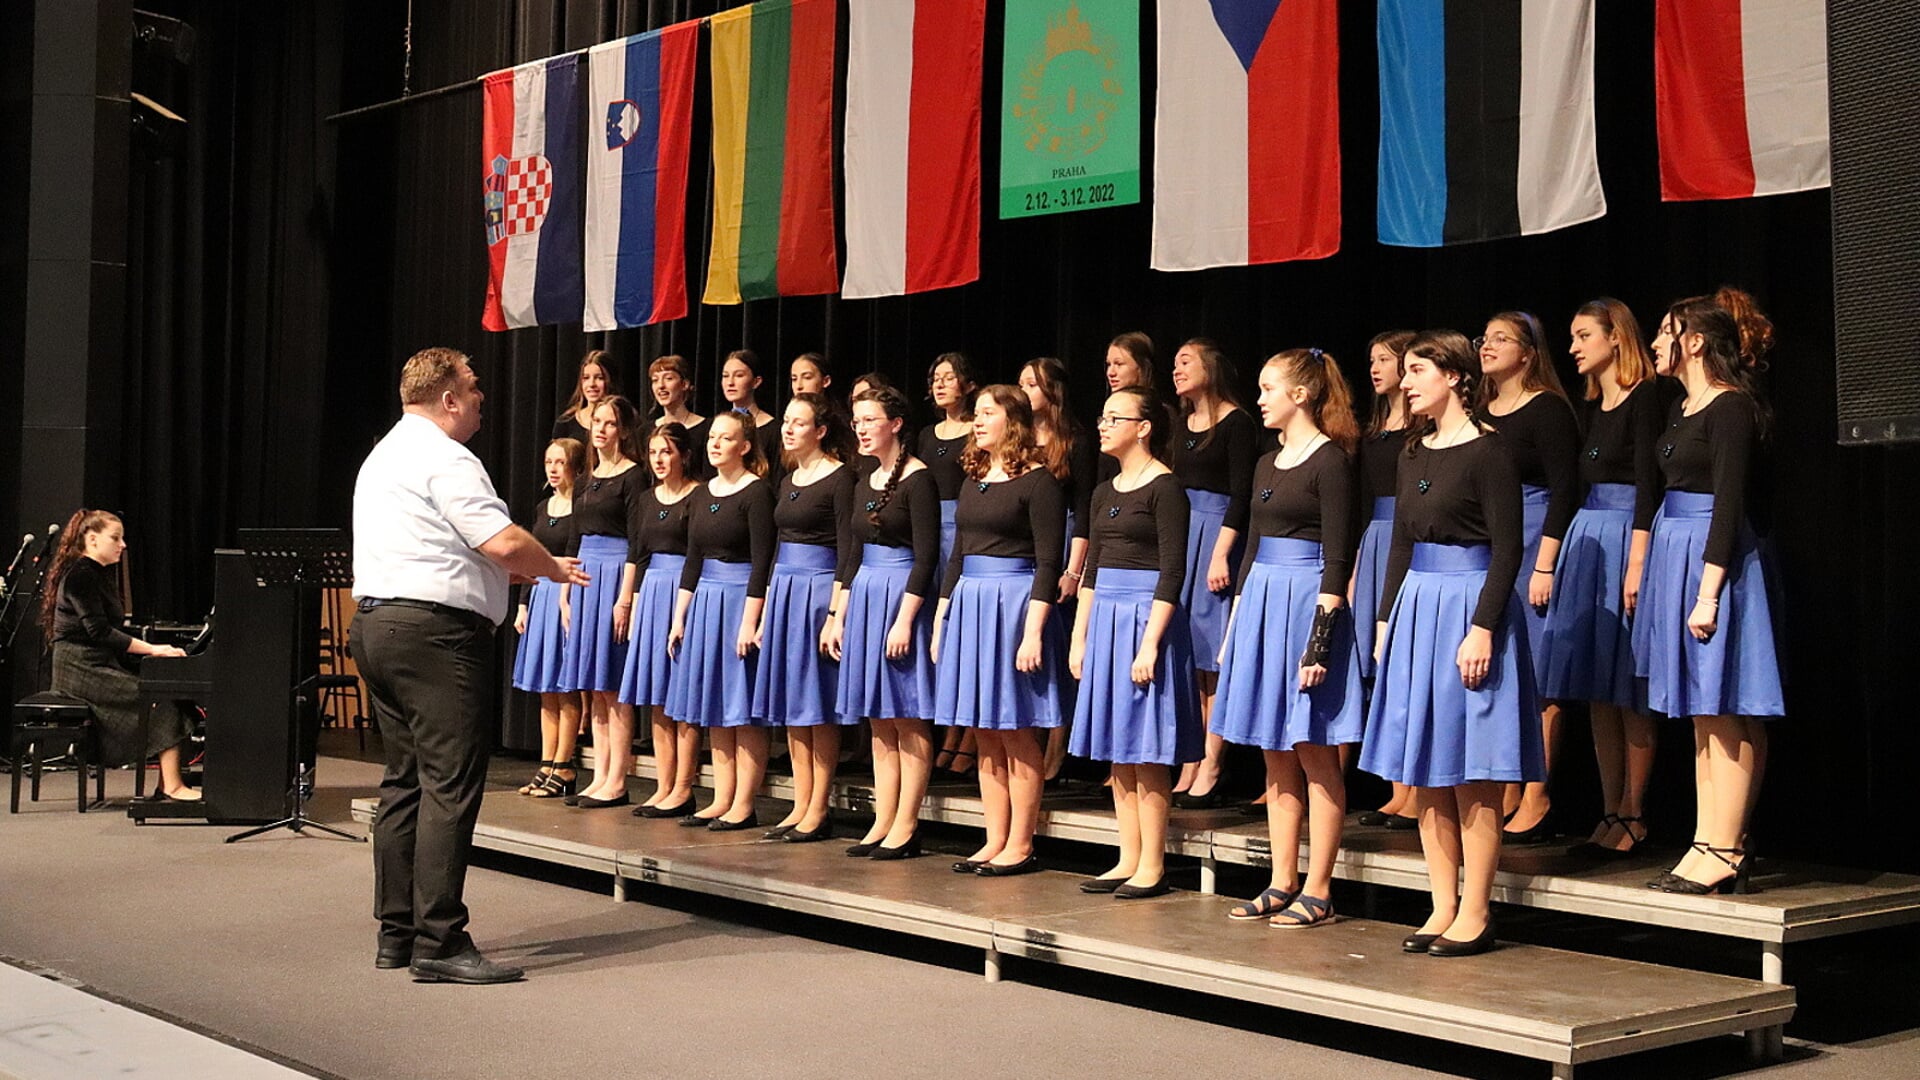 Het koor "Primadonky” uit Havlickuv Brod bestaat uit 25 meisjes tussen de 12 en 18 jaar 